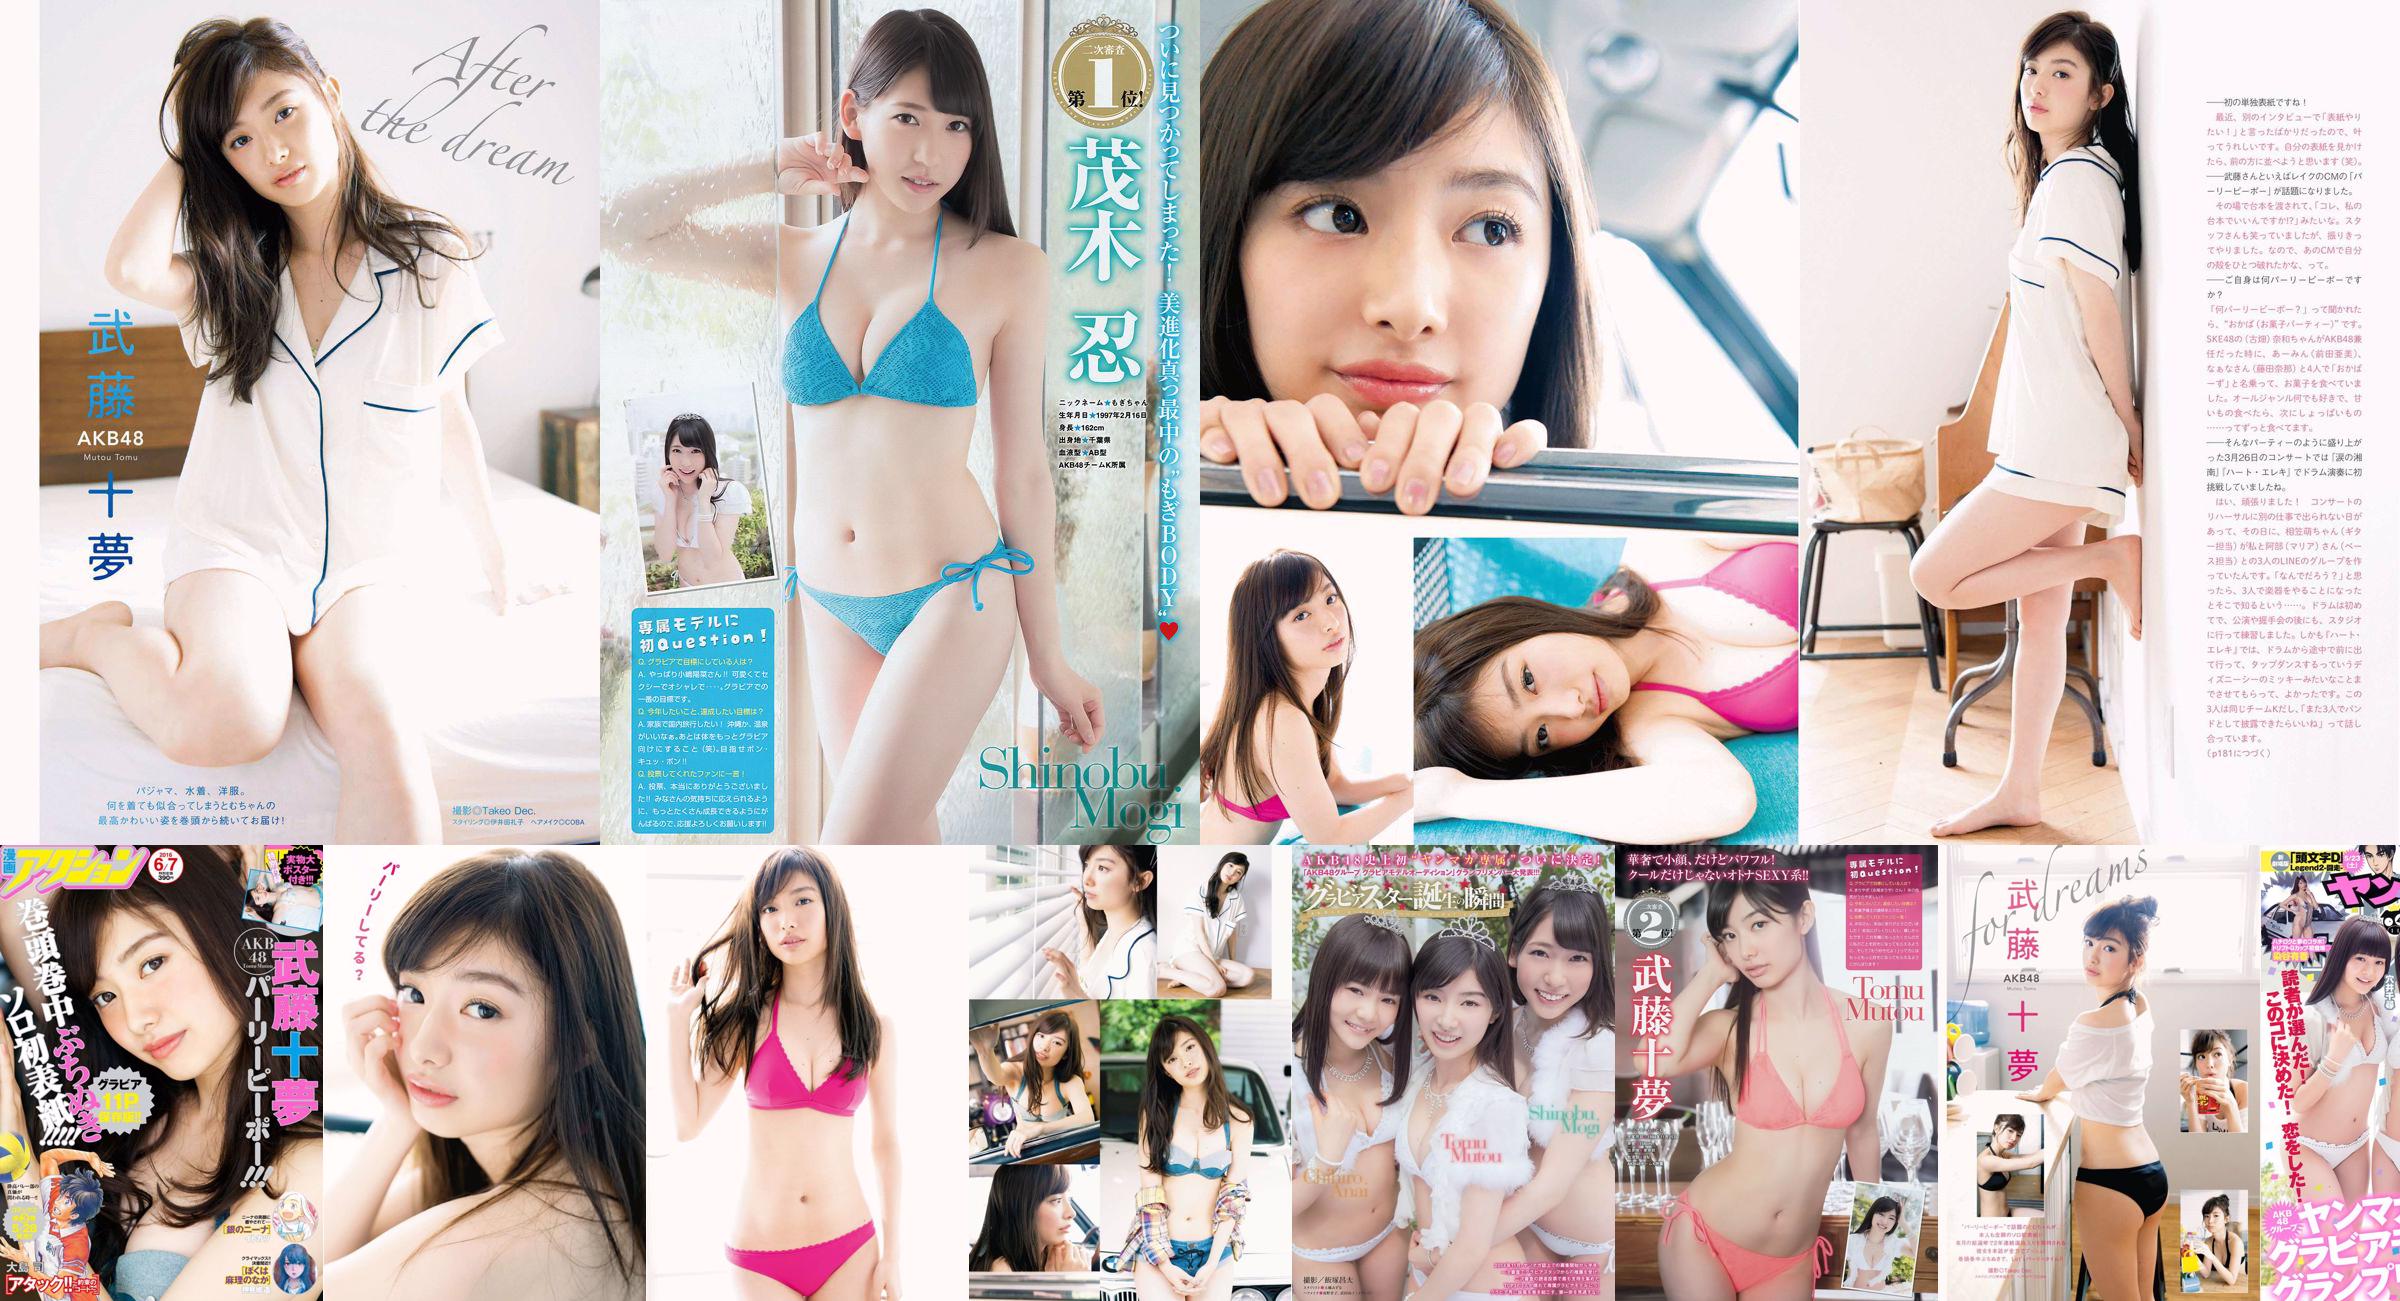 [Young Magazine] Tomu Muto Shinobu Mogi Chihiro Anai Erina Mano Yuka Someya 2015 No.25 Photograph No.62b12e Page 2